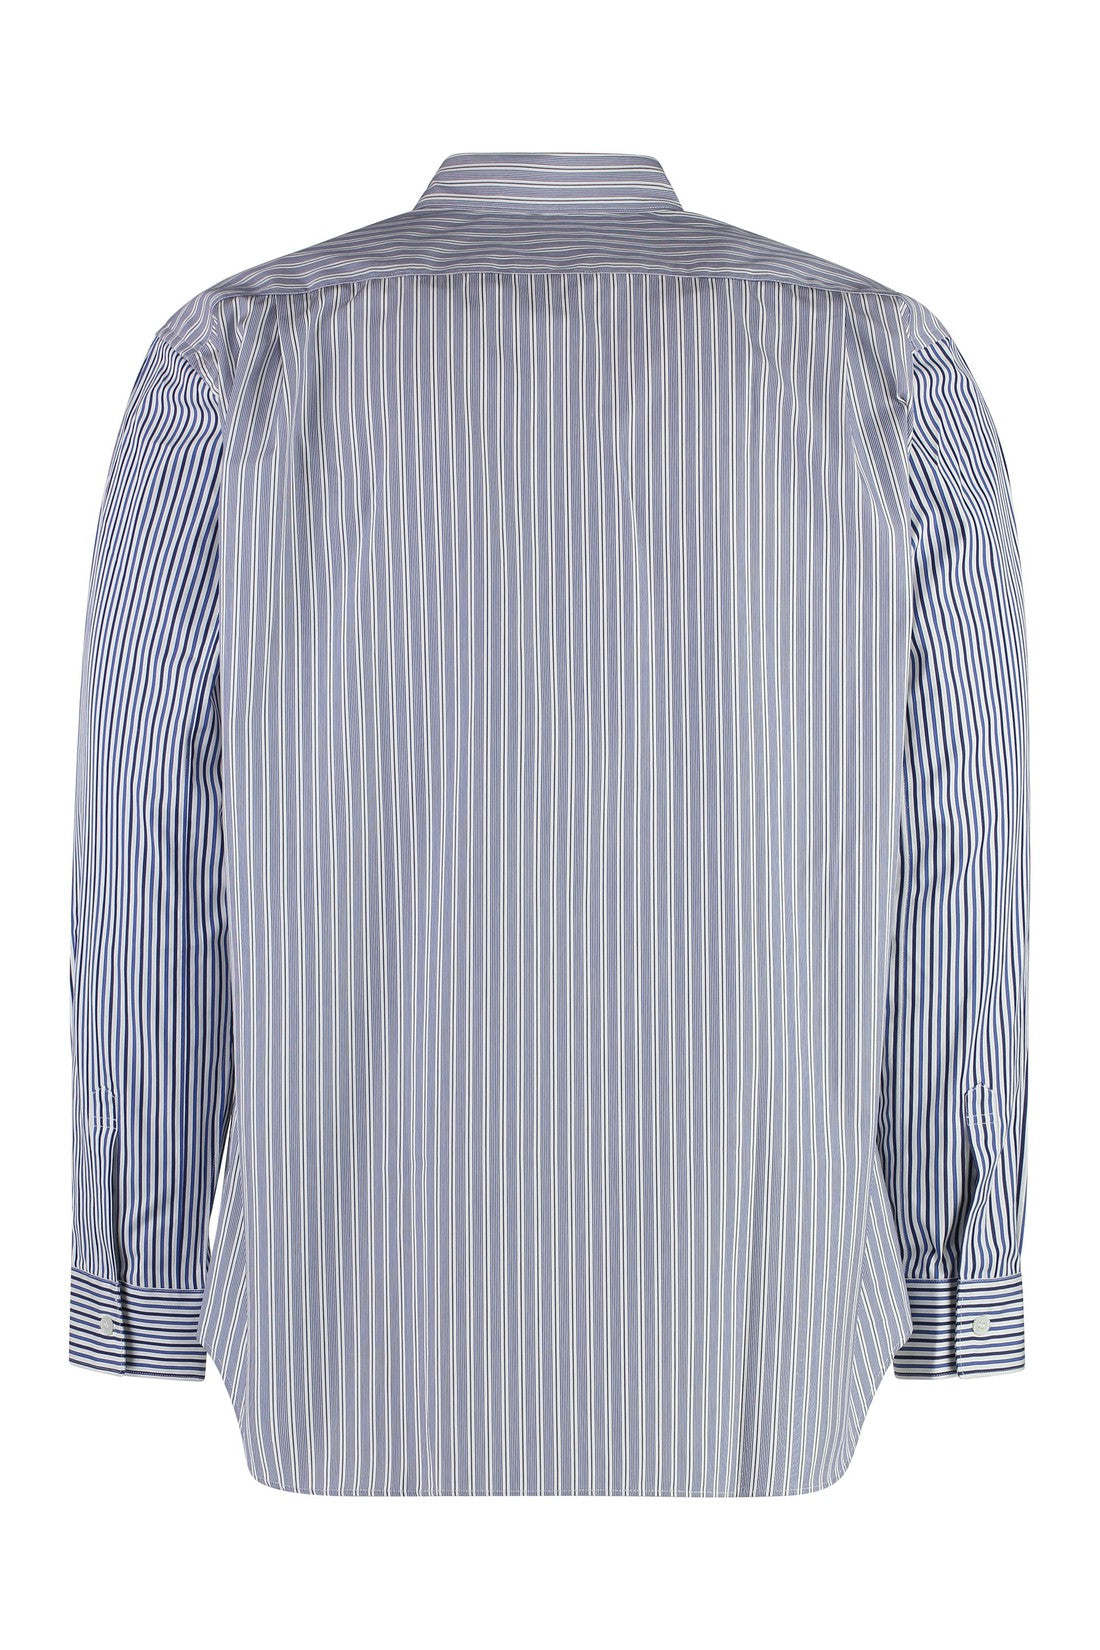 Comme des Garçons SHIRT-OUTLET-SALE-Striped cotton shirt-ARCHIVIST